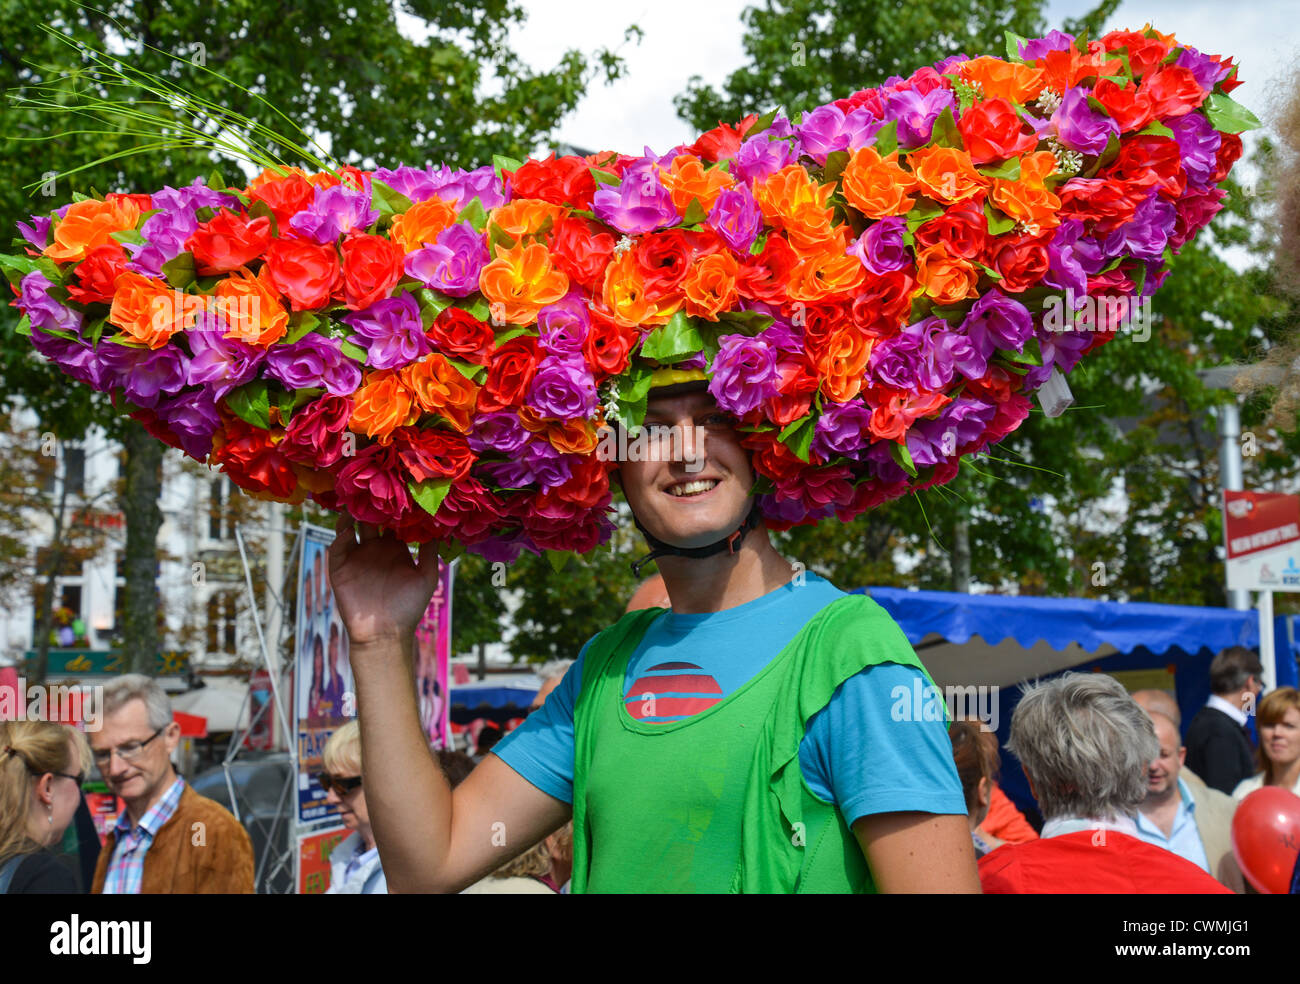 Floral costume during Cultuur Markt, Groenplaats, Antwerp, Antwerp Province, The Flemish Region, Belgium Stock Photo